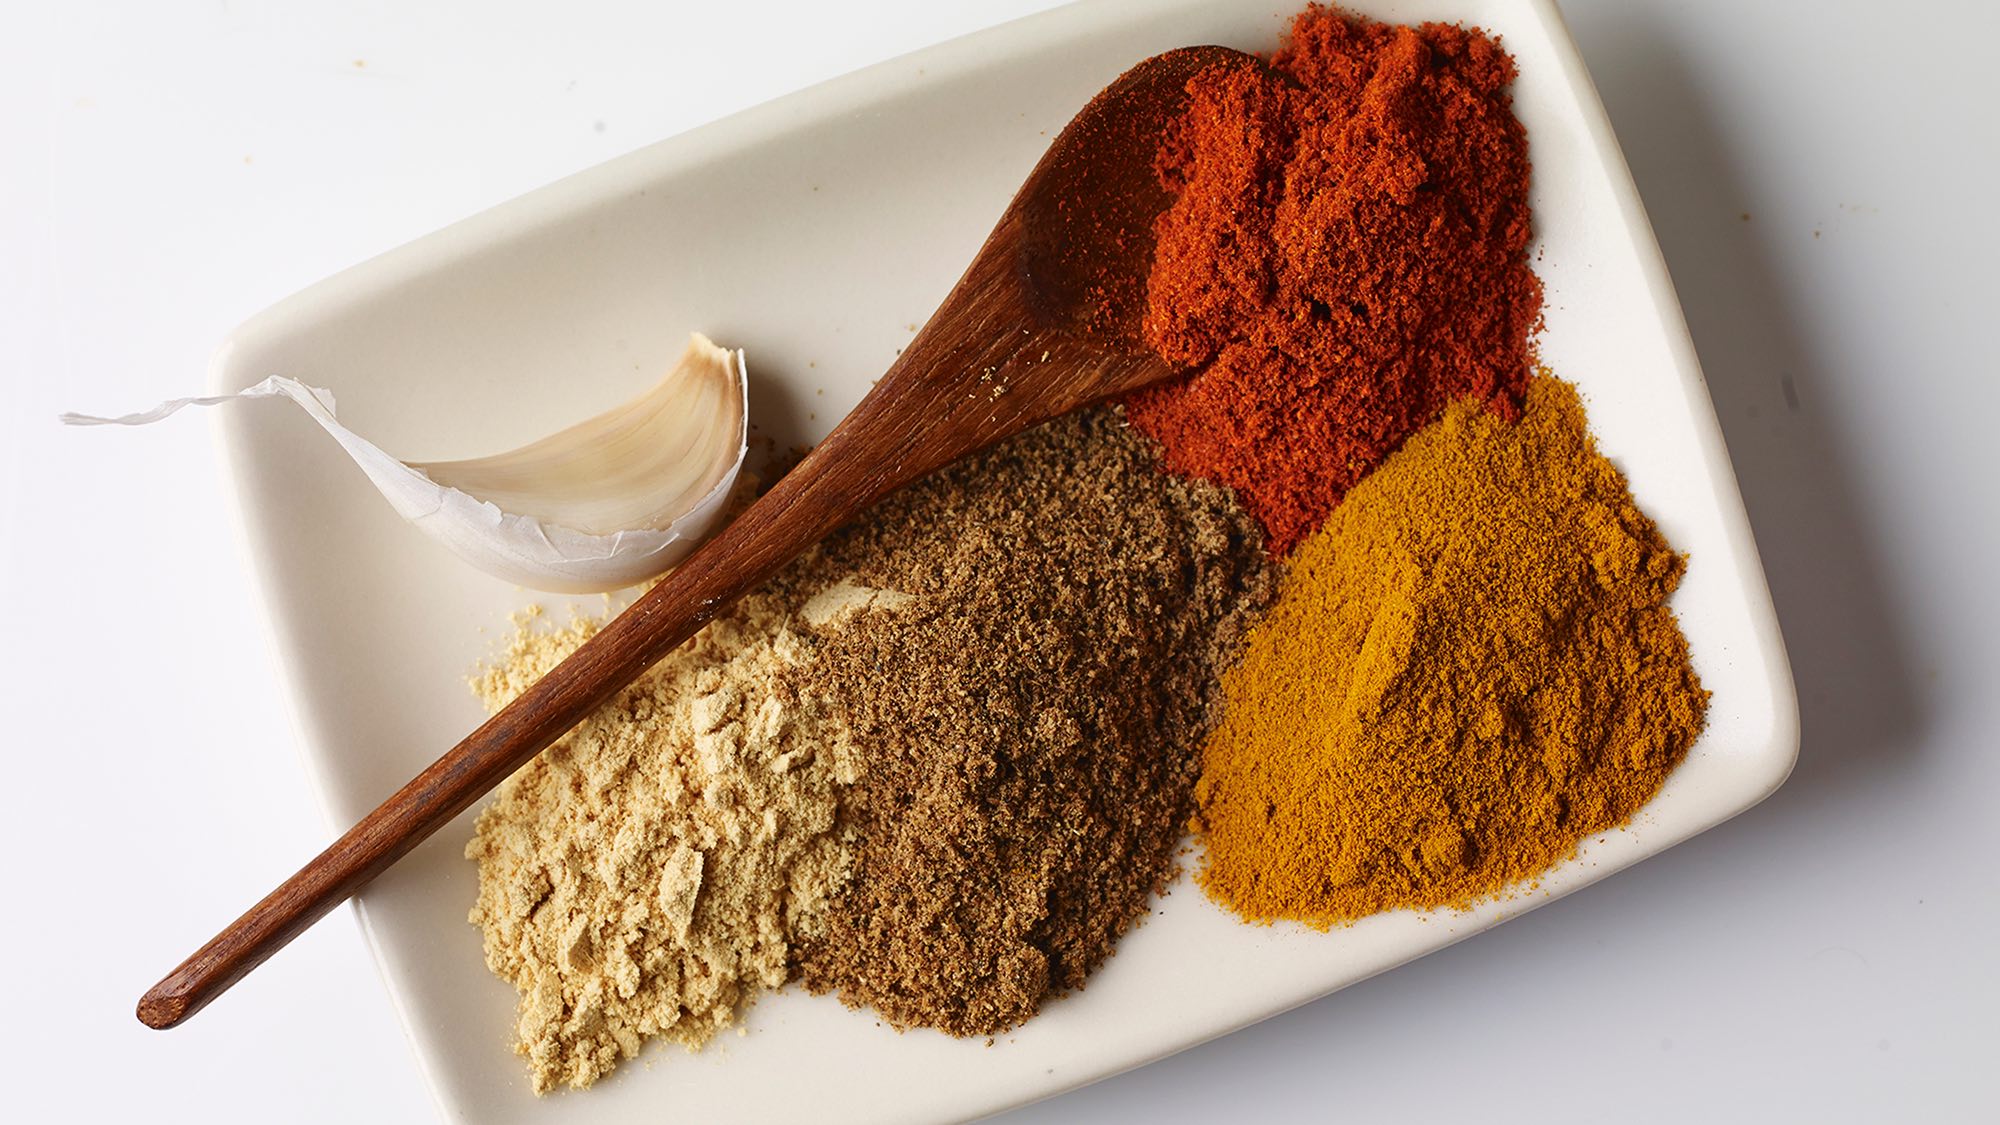 kashmiri-masala-spice-blend.jpg